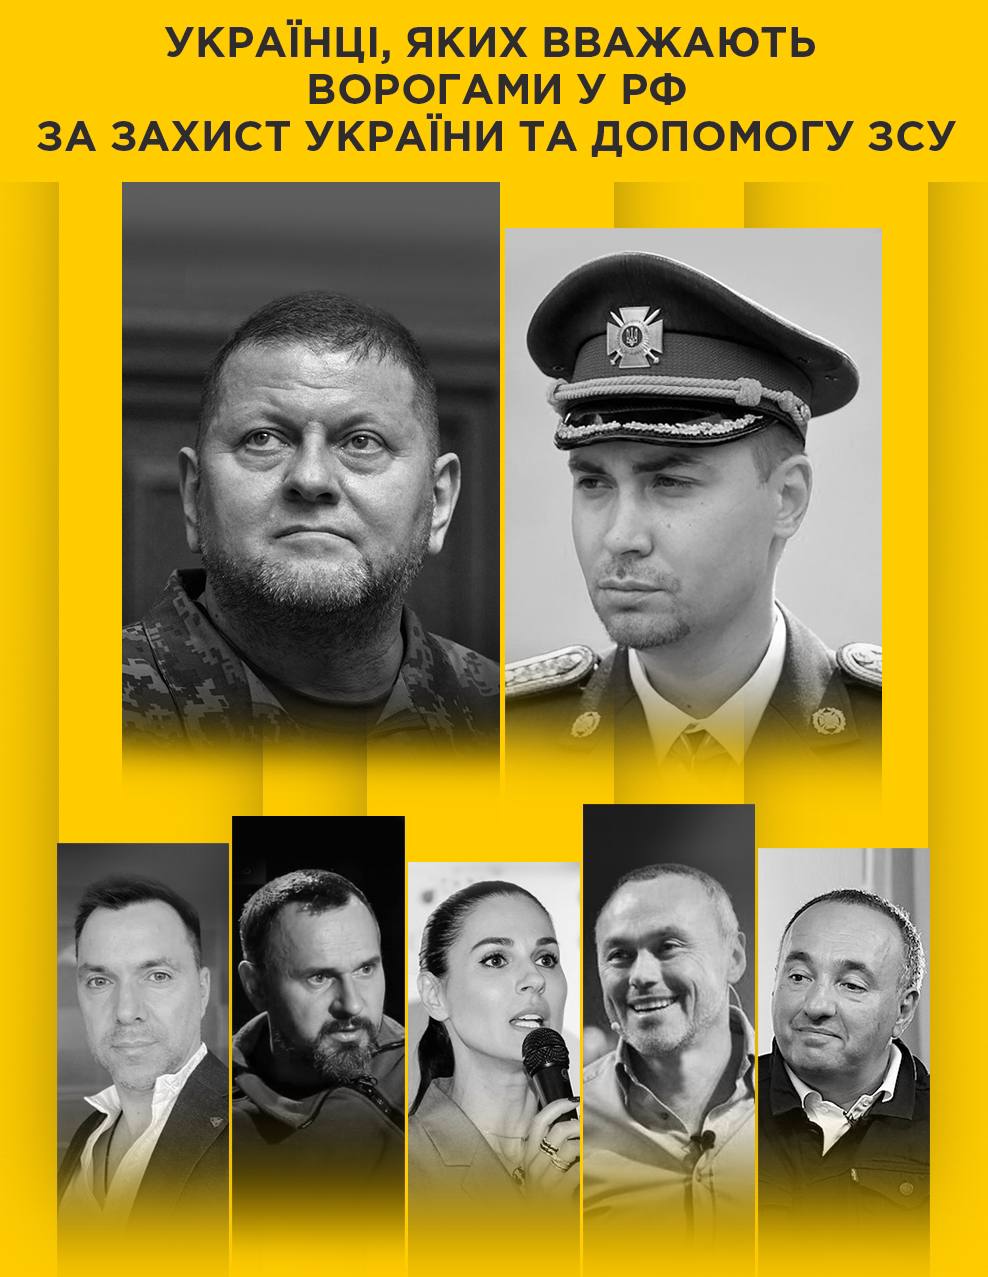 Кого з українців офіційно вважають найбільшими ворогами у РФ за захист України та допомогу ЗСУ?